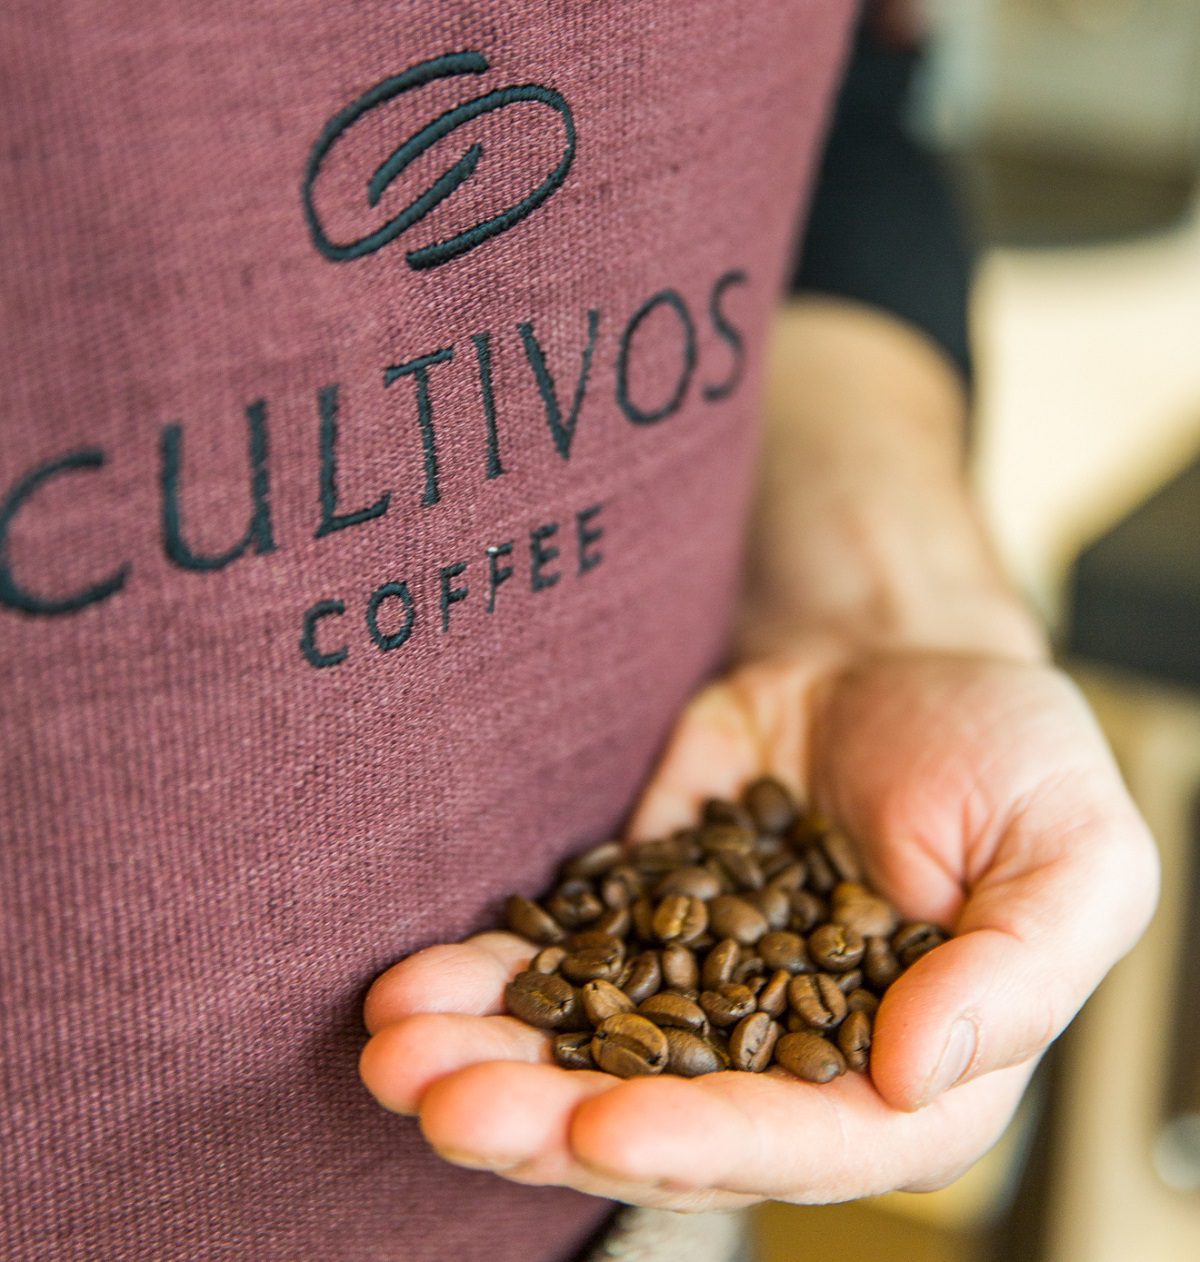 Cultivos Coffee